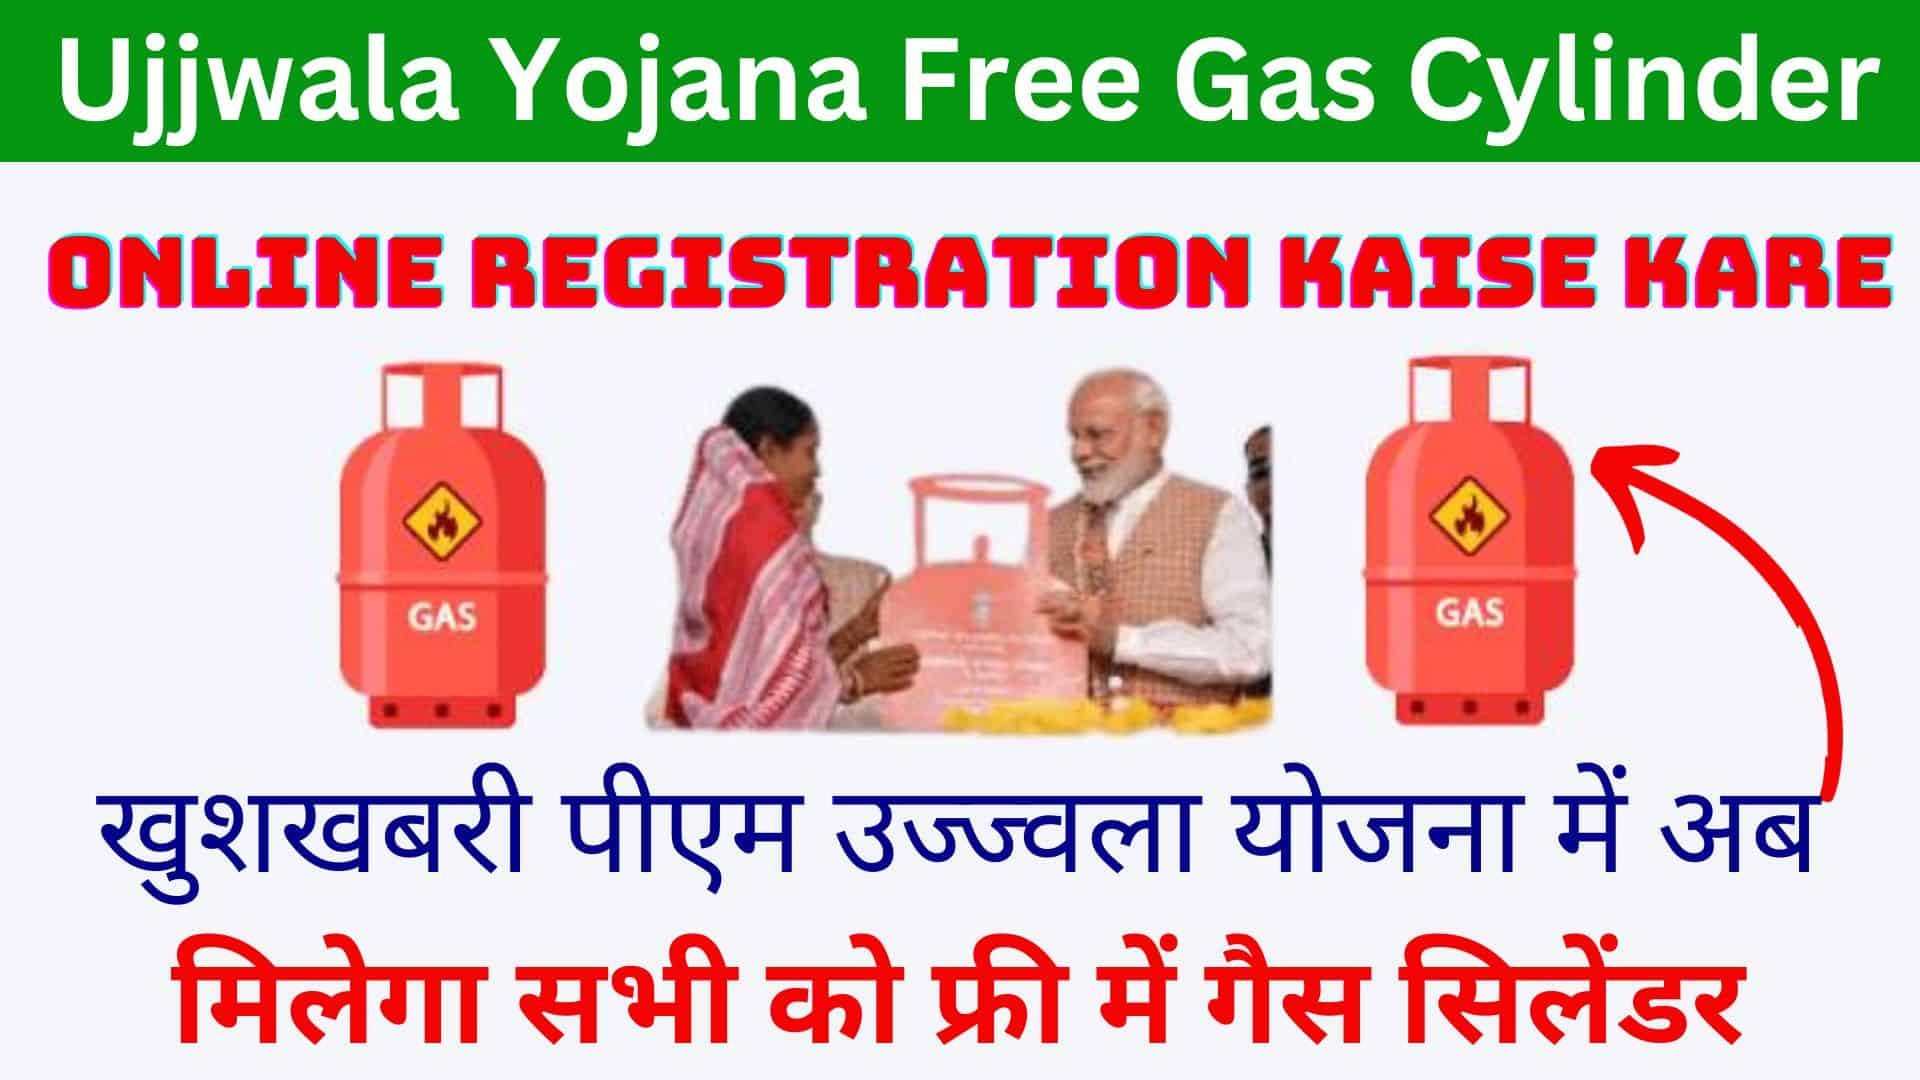 Ujjwala Yojana Free Gas Cylinder Online Registration Kaise Kare : खुशखबरी पीएम उज्ज्वला योजना में अब मिलेगा सभी को फ्री में गैस सिलेंडर